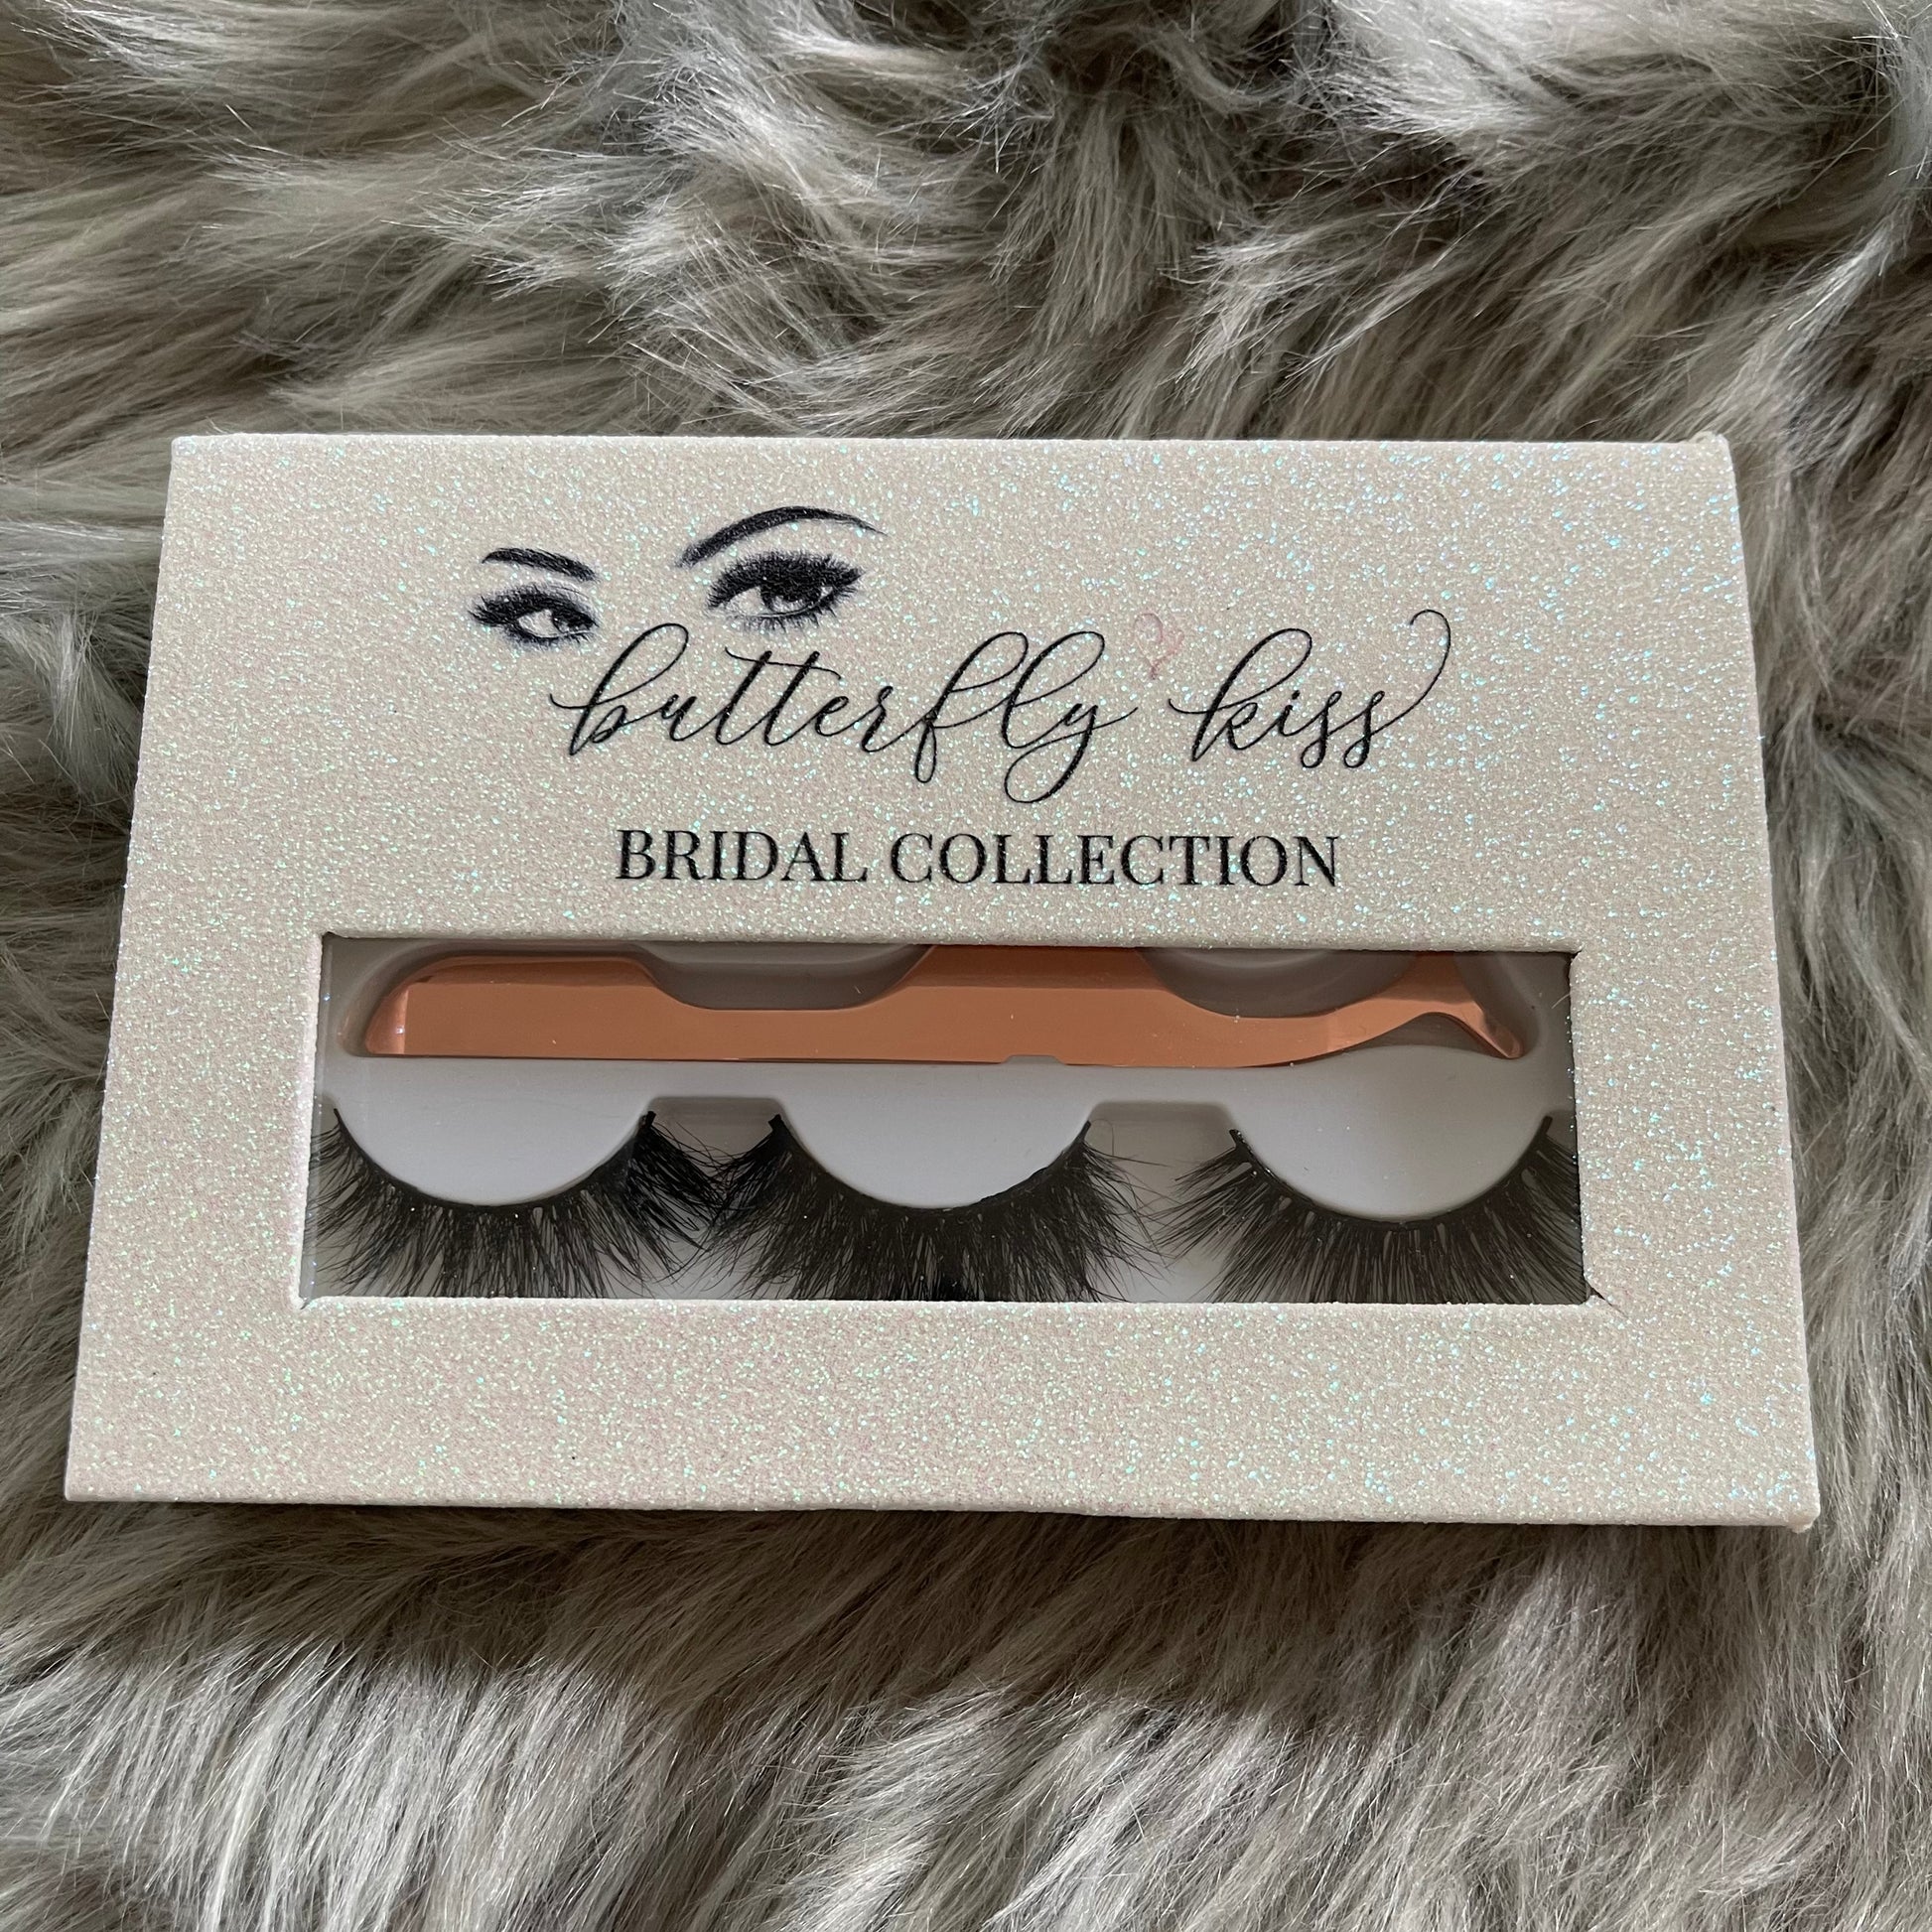 BK bridal collection lash set - bkeyelashes